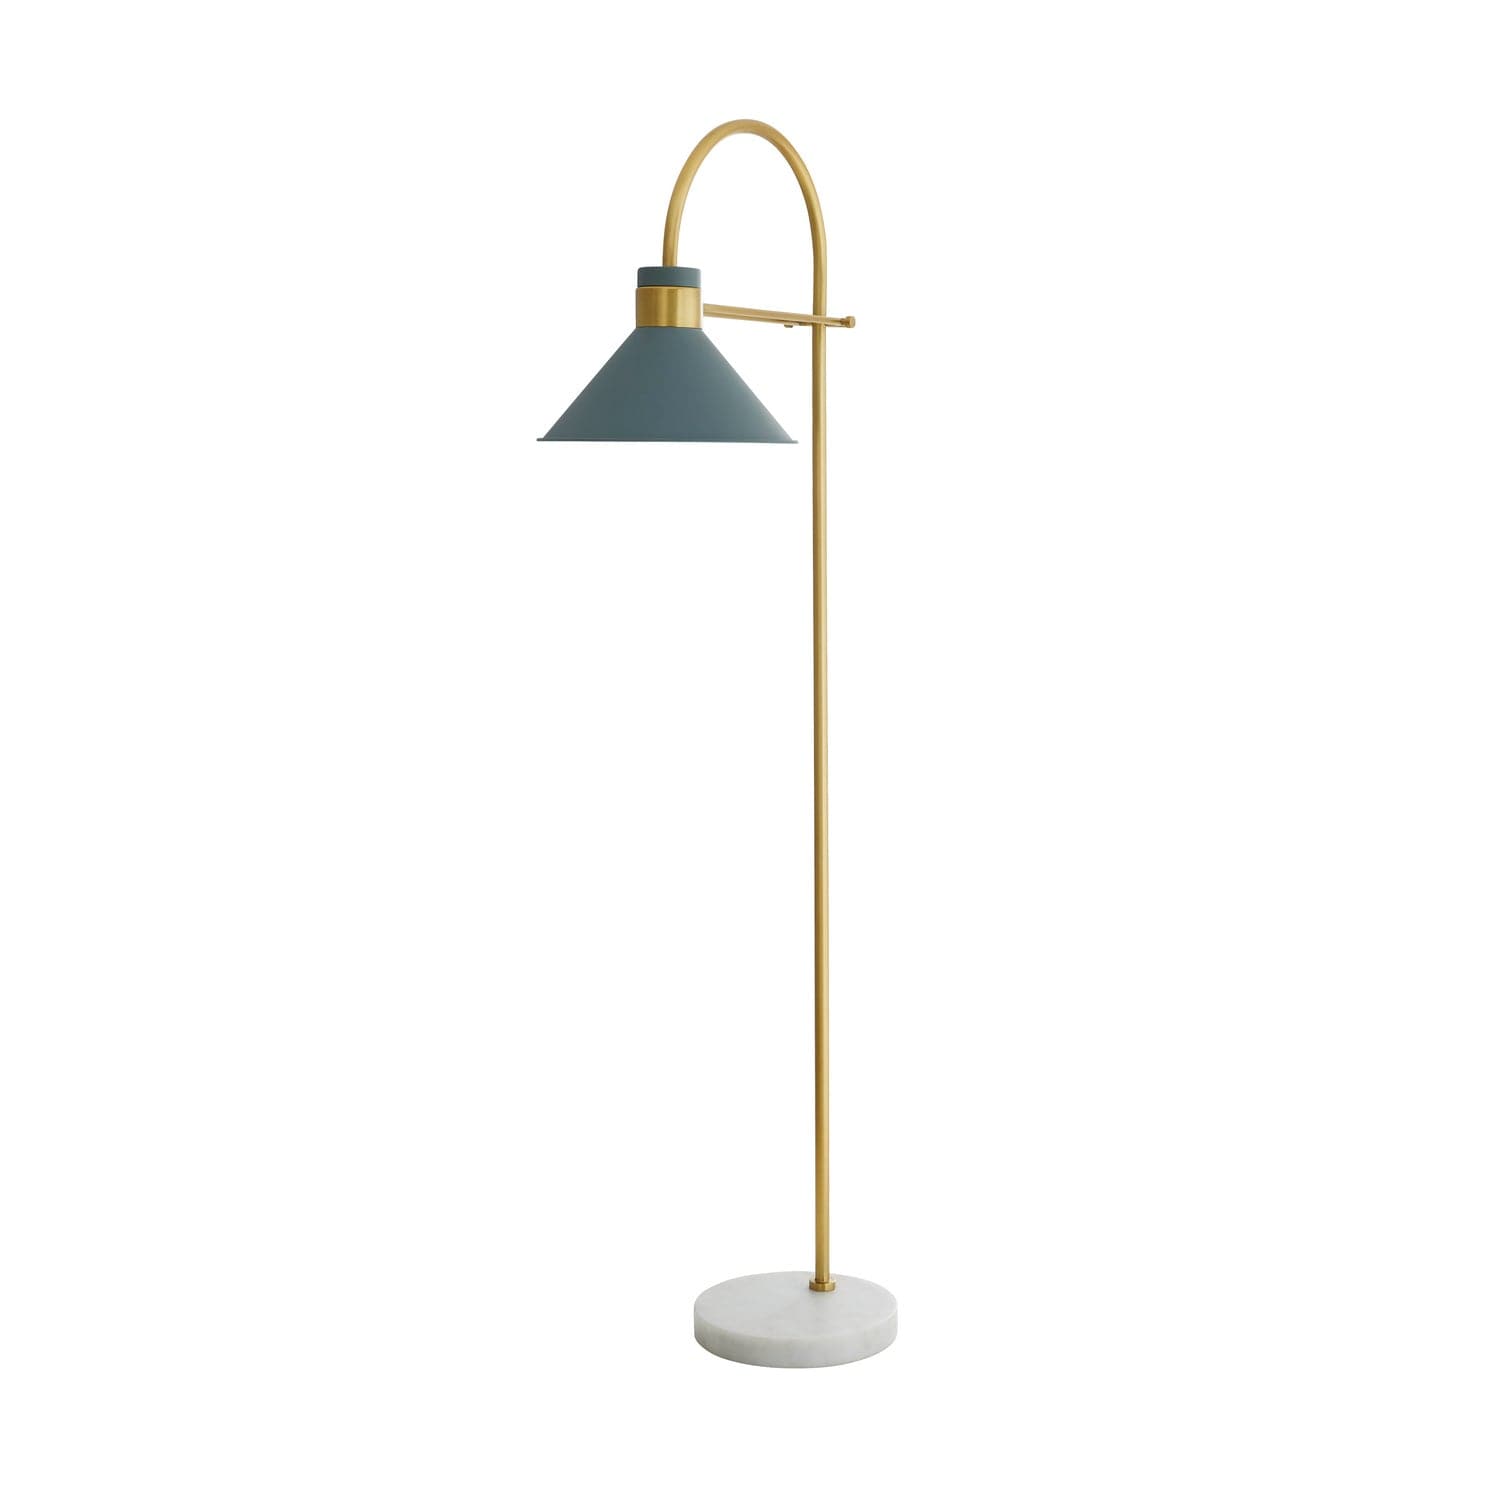 Arteriors - 79015 - Lamps - Floor Lamps - Lane